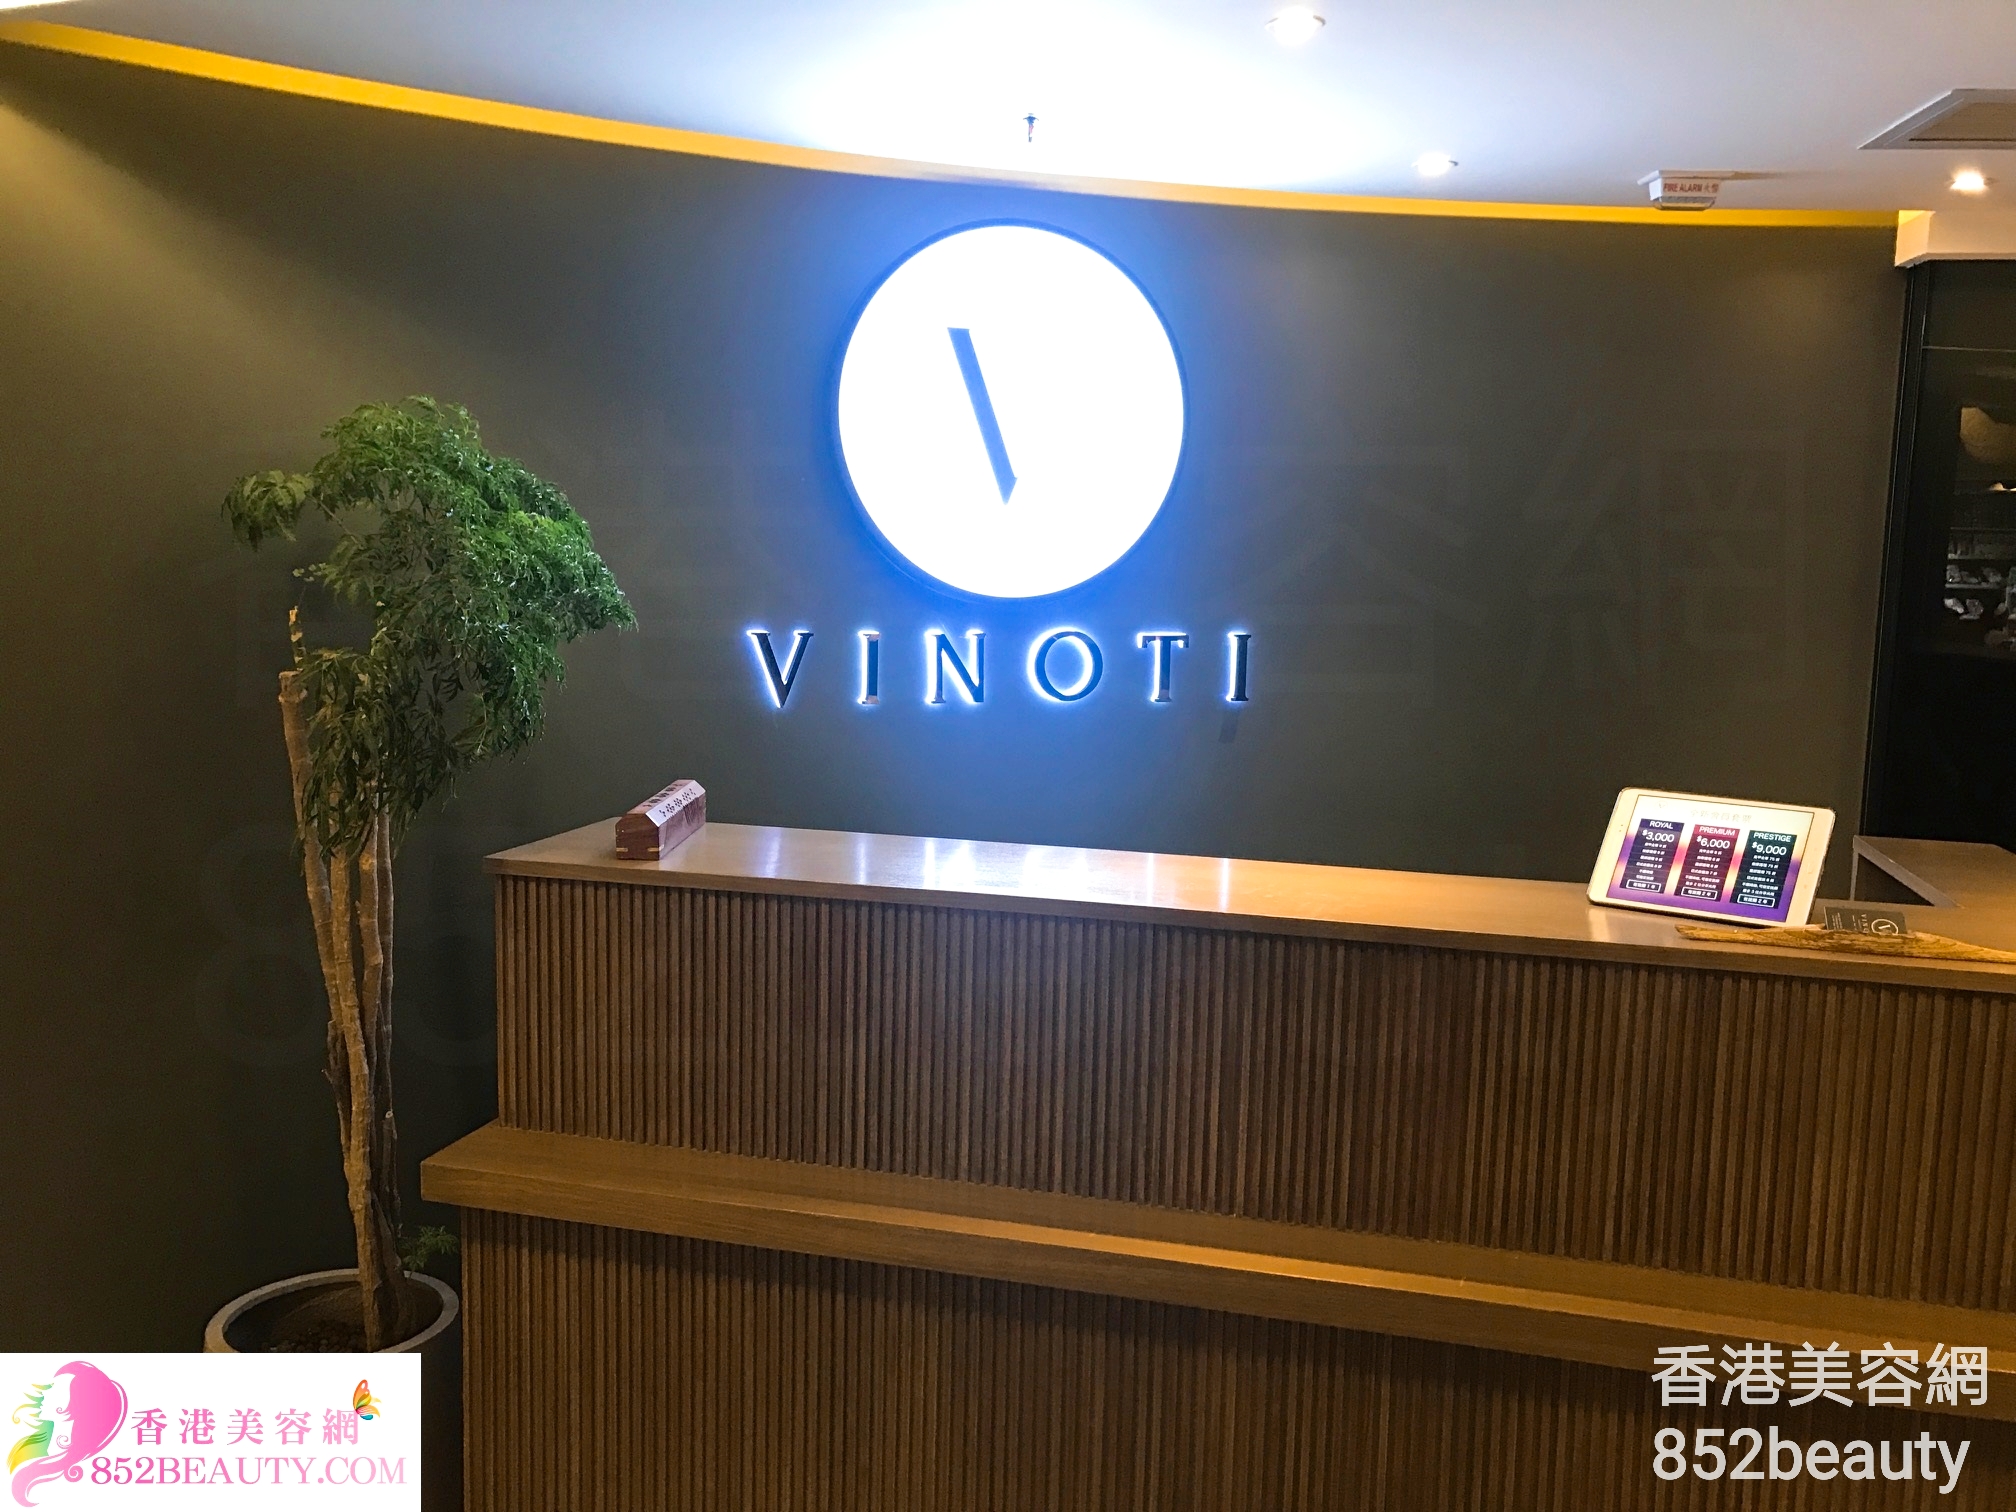 香港美容網 Hong Kong Beauty Salon 美容院 / 美容師: Vinoti Beauty Lab